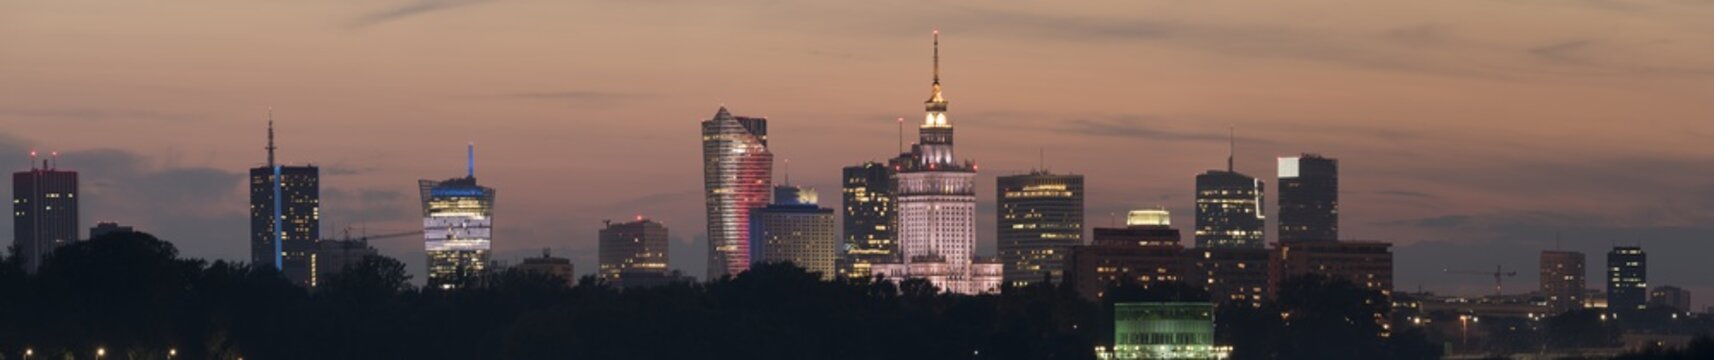 Fototapeta Night panoramic view of Warsaw skyline